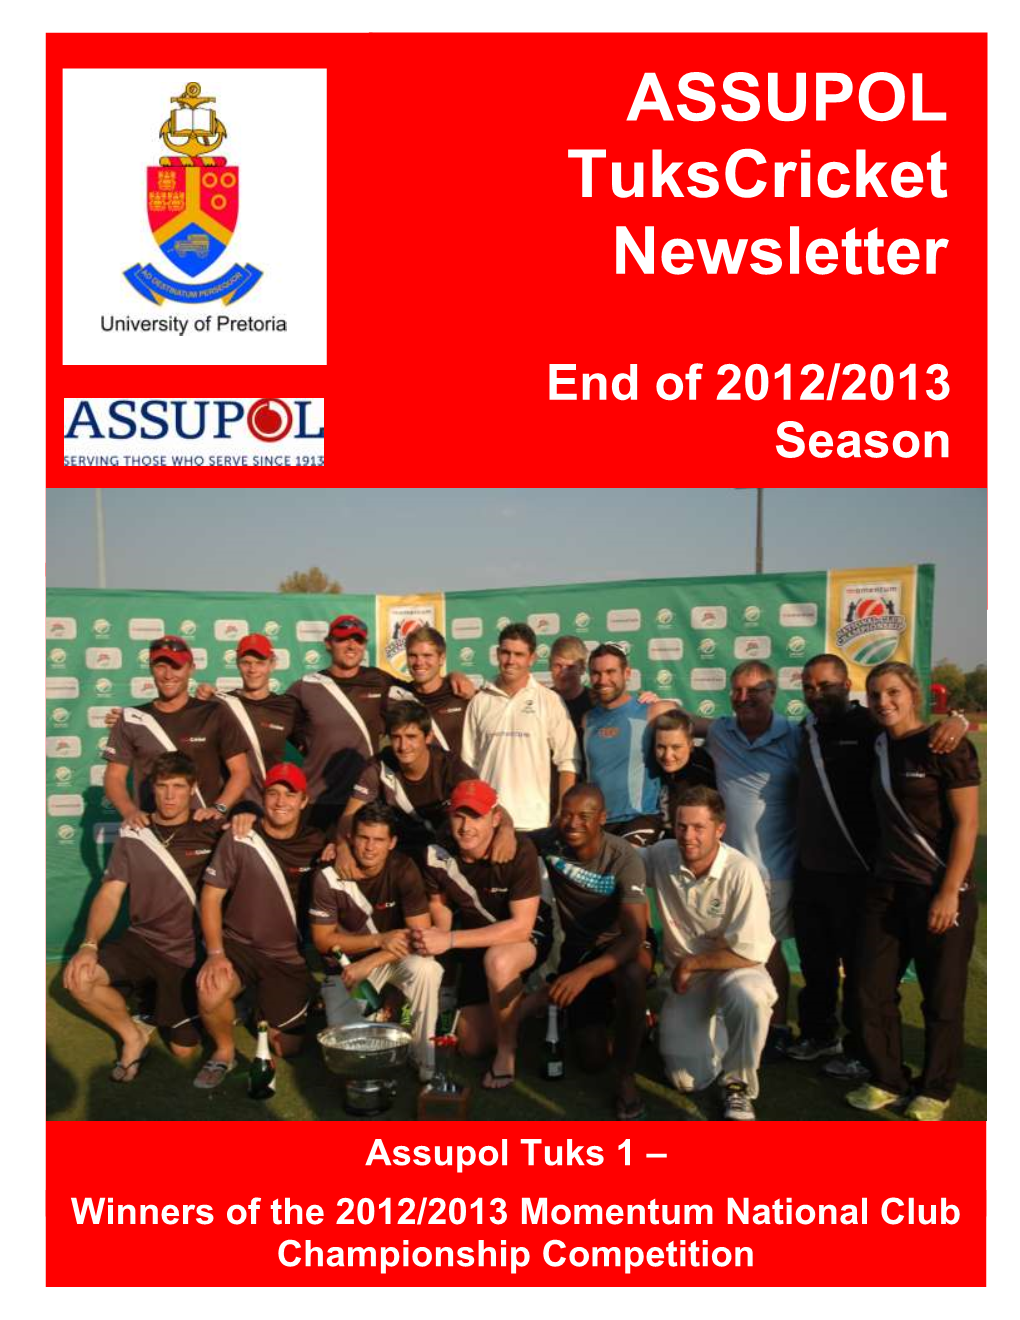 Assupol Tukscricket End of Season Newsletter